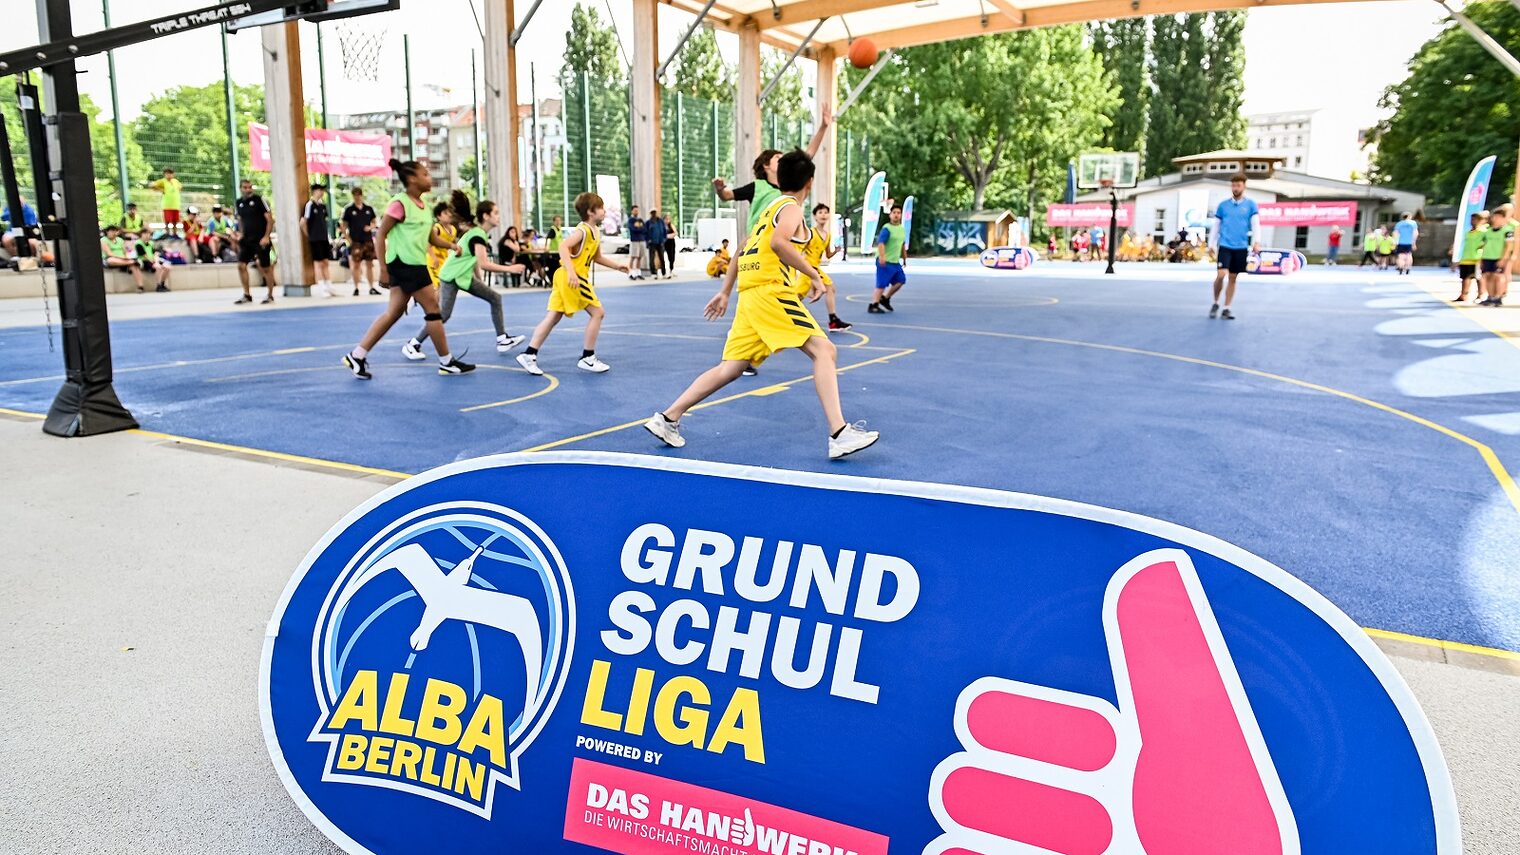 Max-Schmeling-Halle in Berlin/ Logo: Alba Berlin, Grundschulliga, presented by @dashandwerk, das Handwerk, Basketball, Turnier 